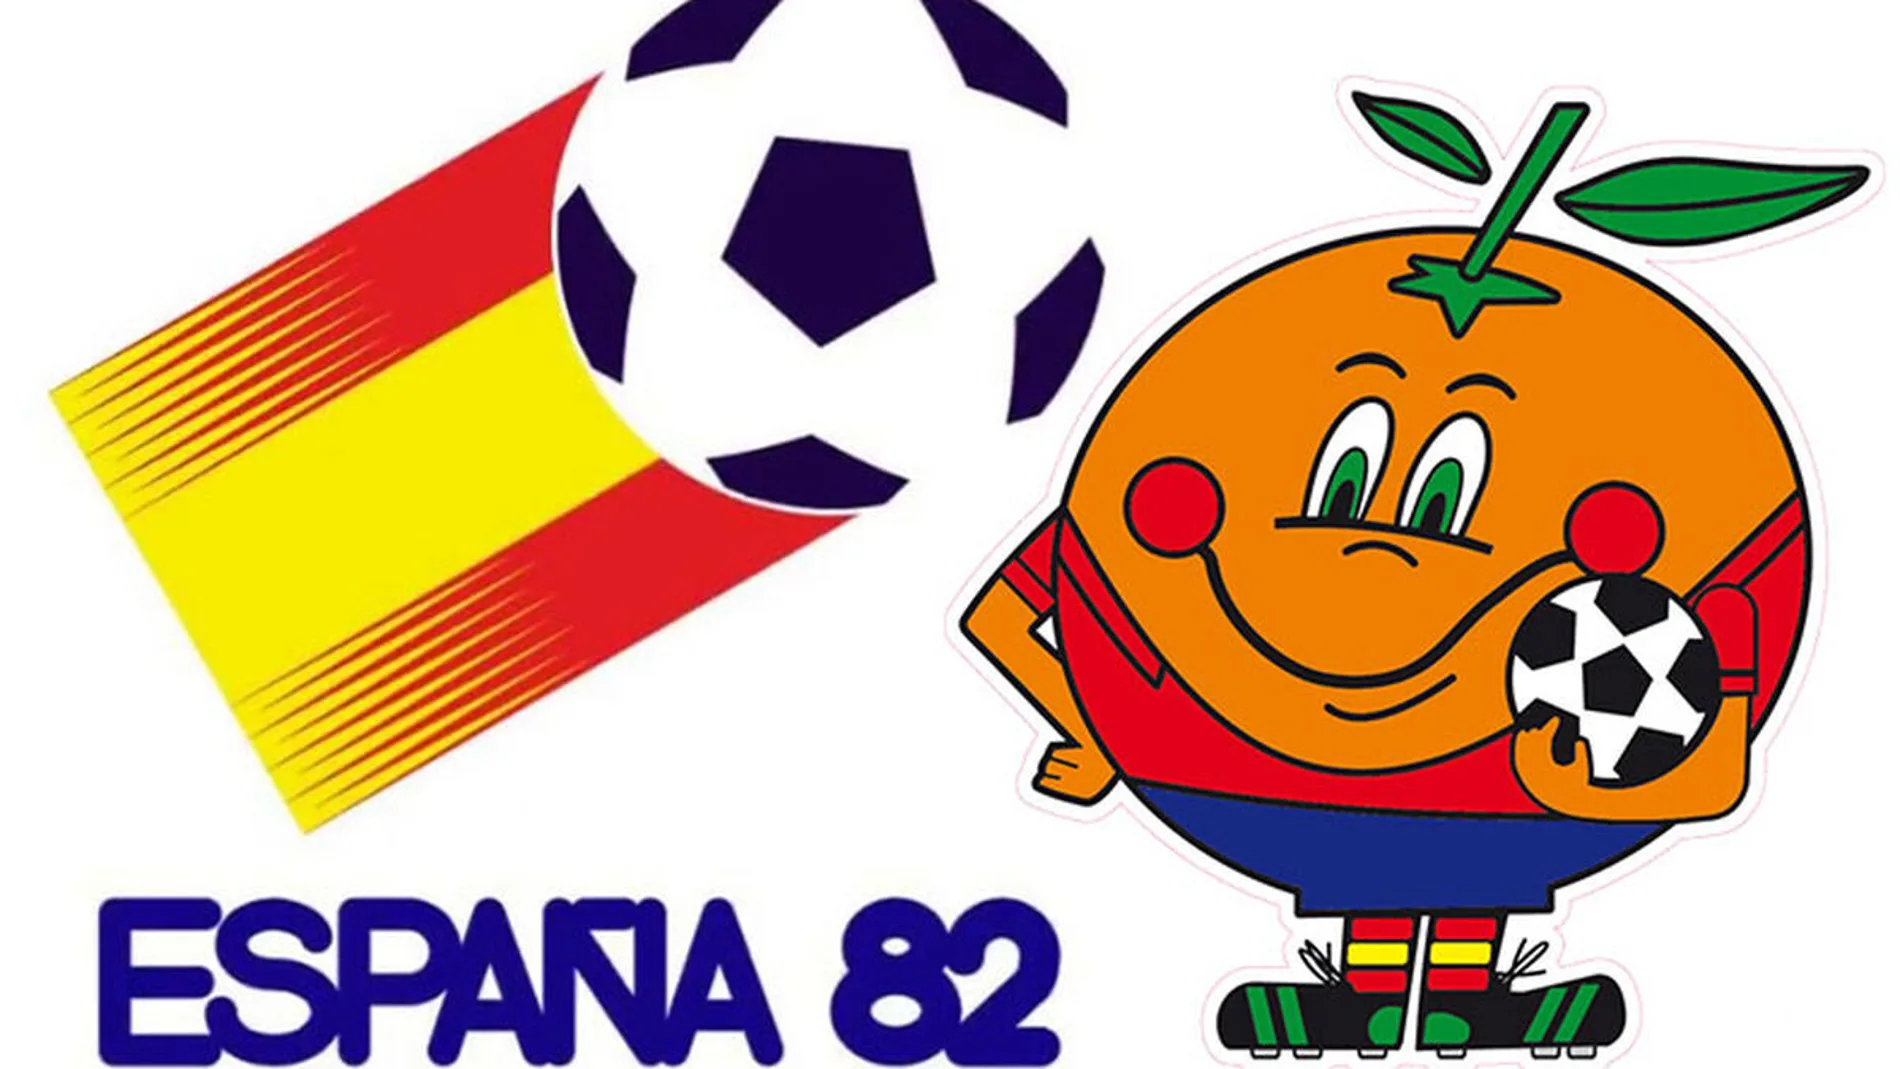 Naranjito, la inolvidable mascota del Mundial de España 82